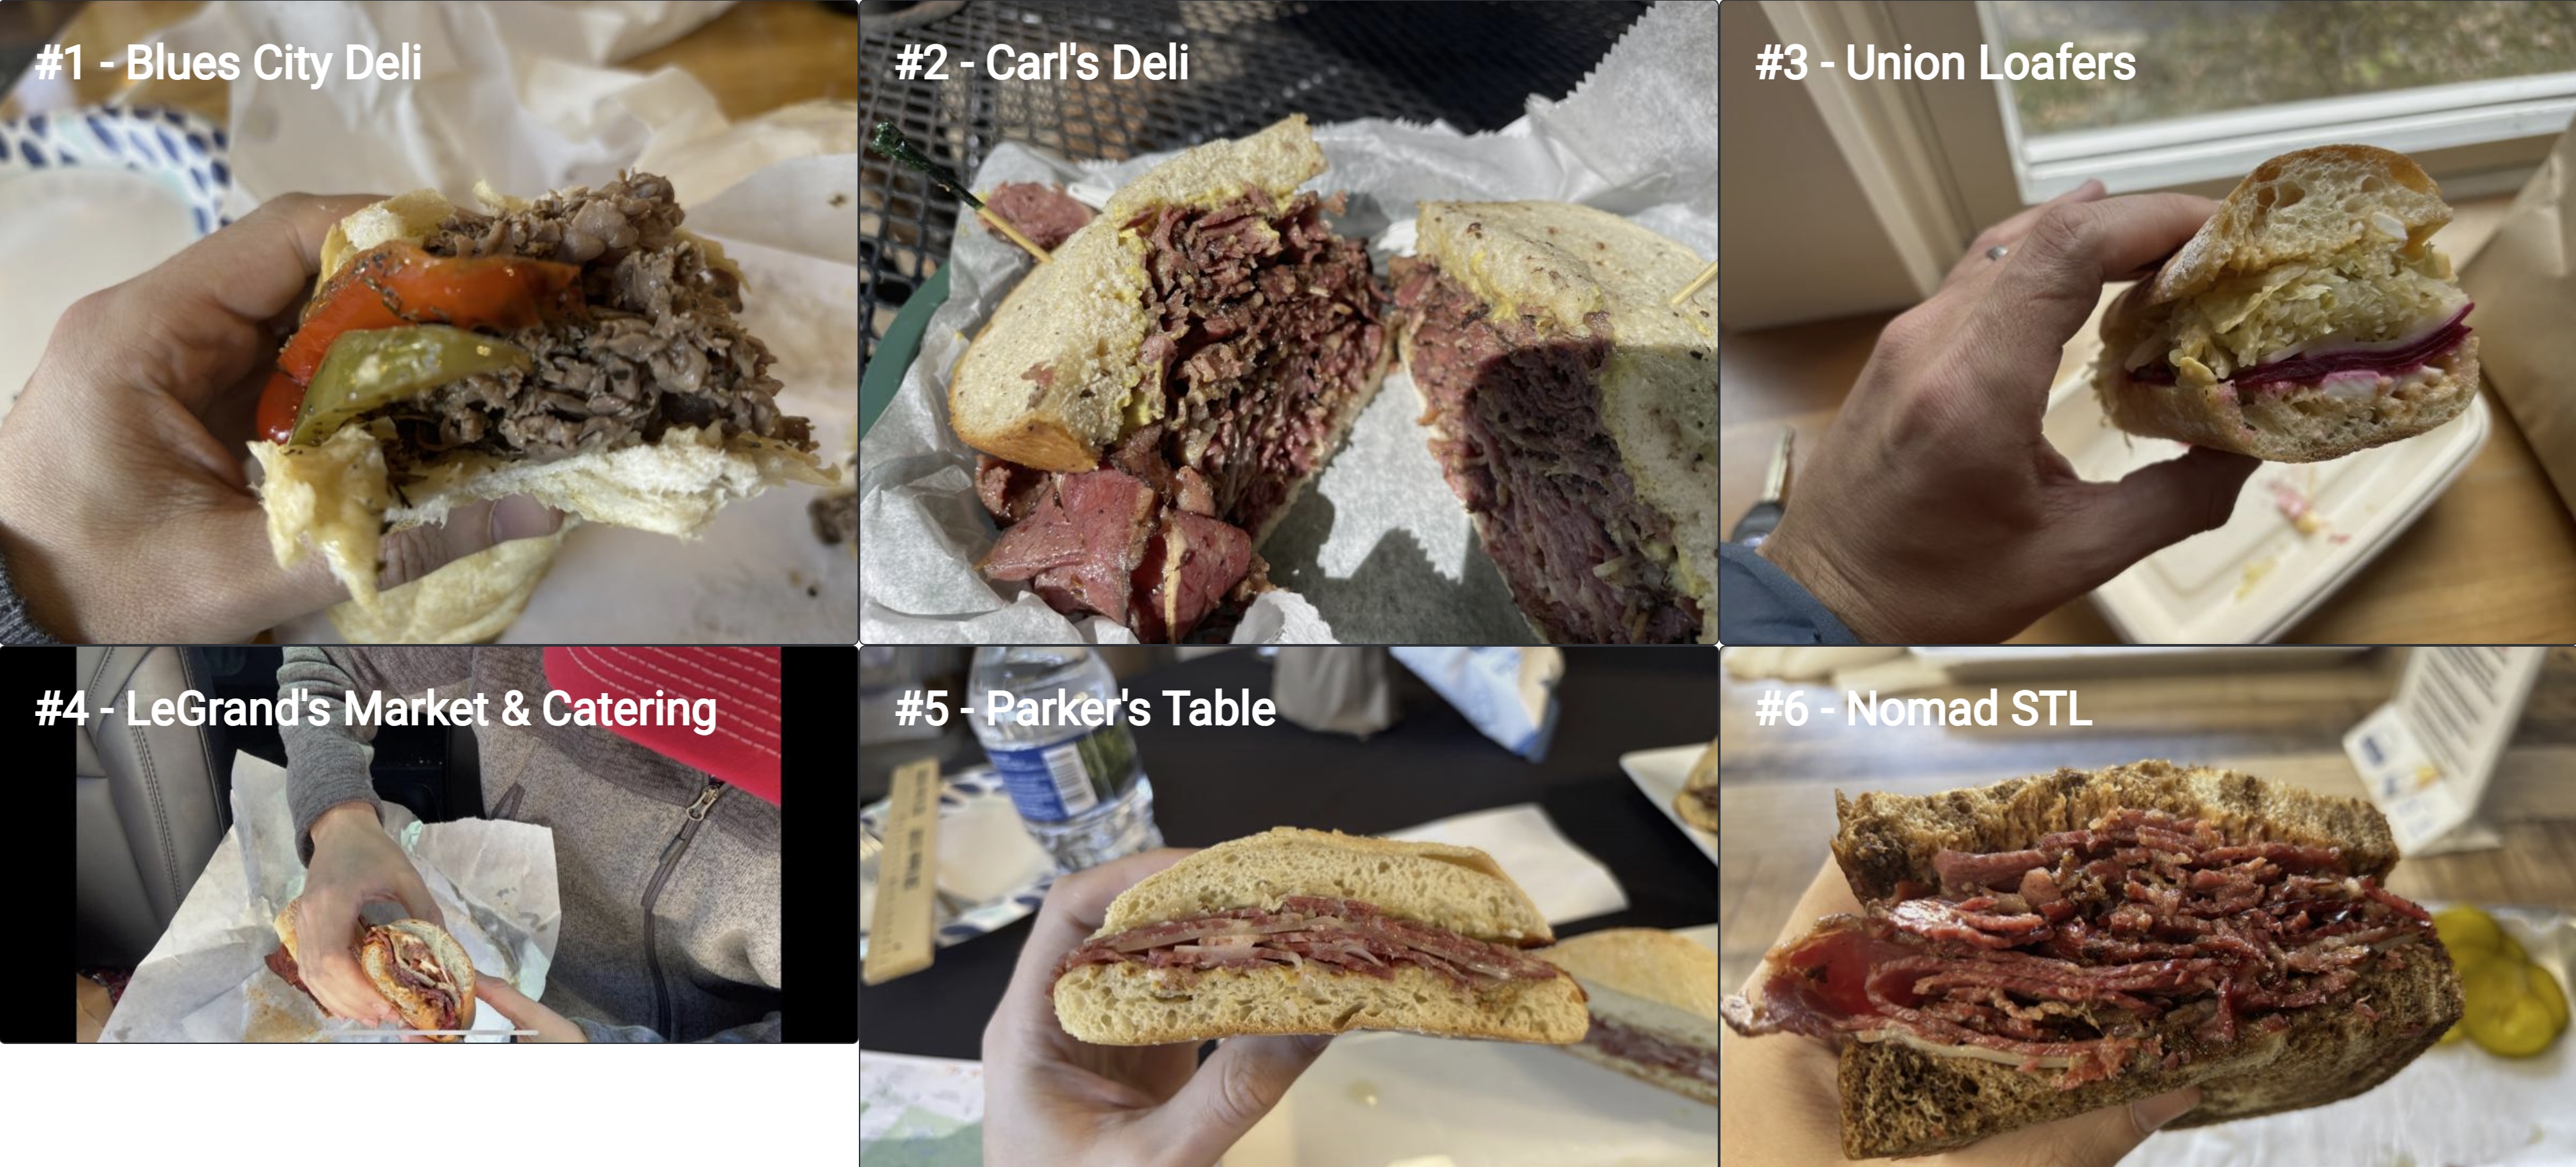 St. Louis Sandwich Comparisons